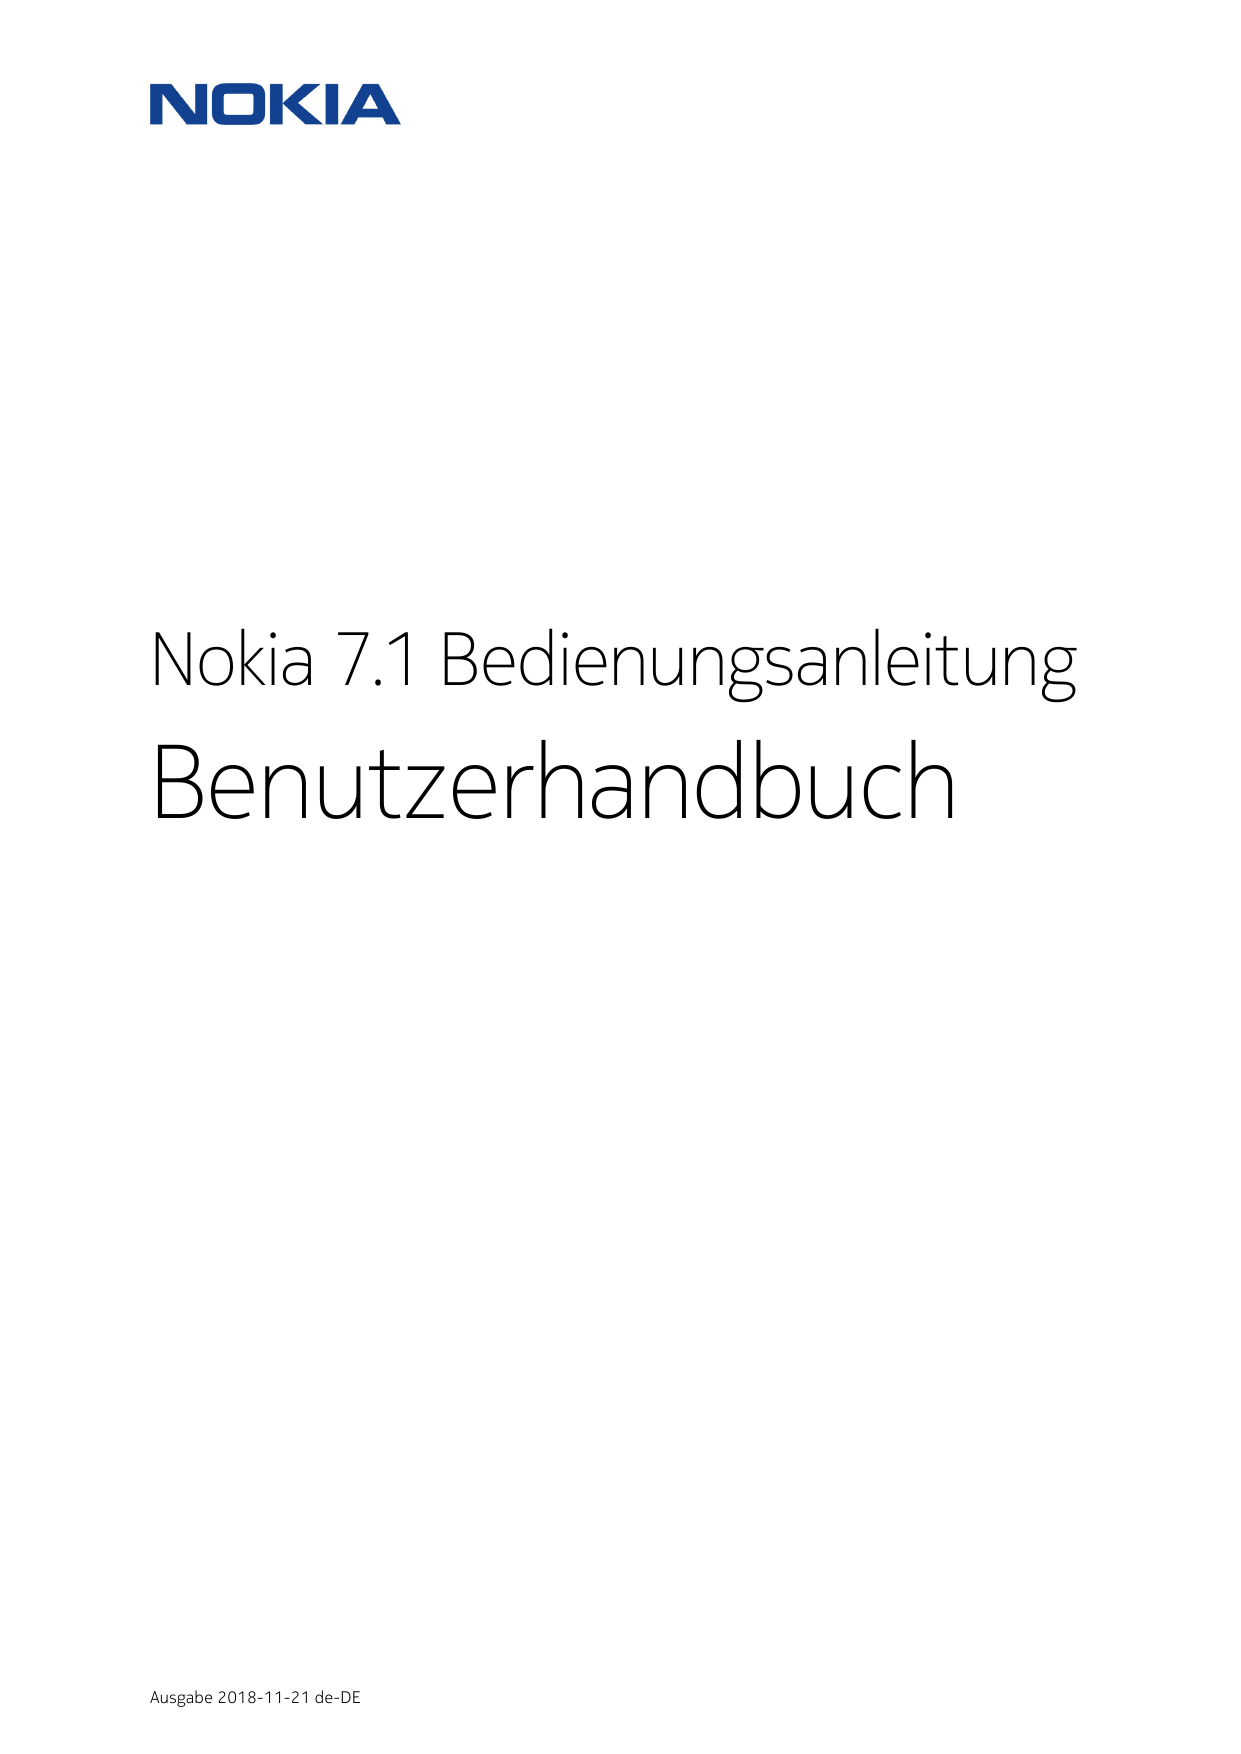 Nokia 7.1 BedienungsanleitungBenutzerhandbuchAusgabe 2018-11-21 de-DE